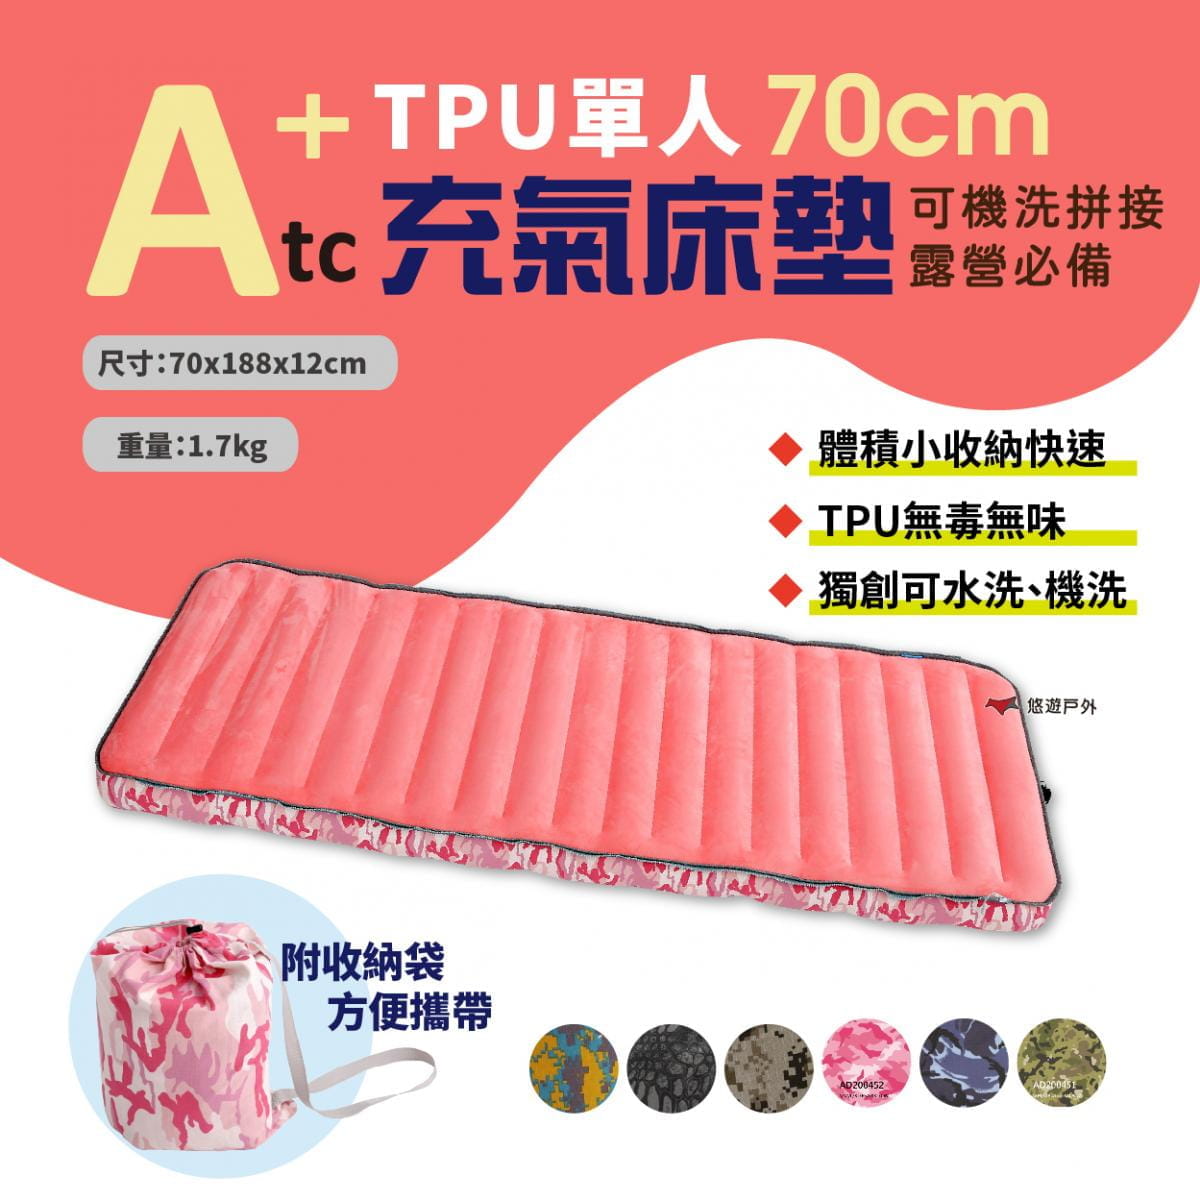 【ATC】TPU組合充氣床墊_70cm (悠遊戶外) 1